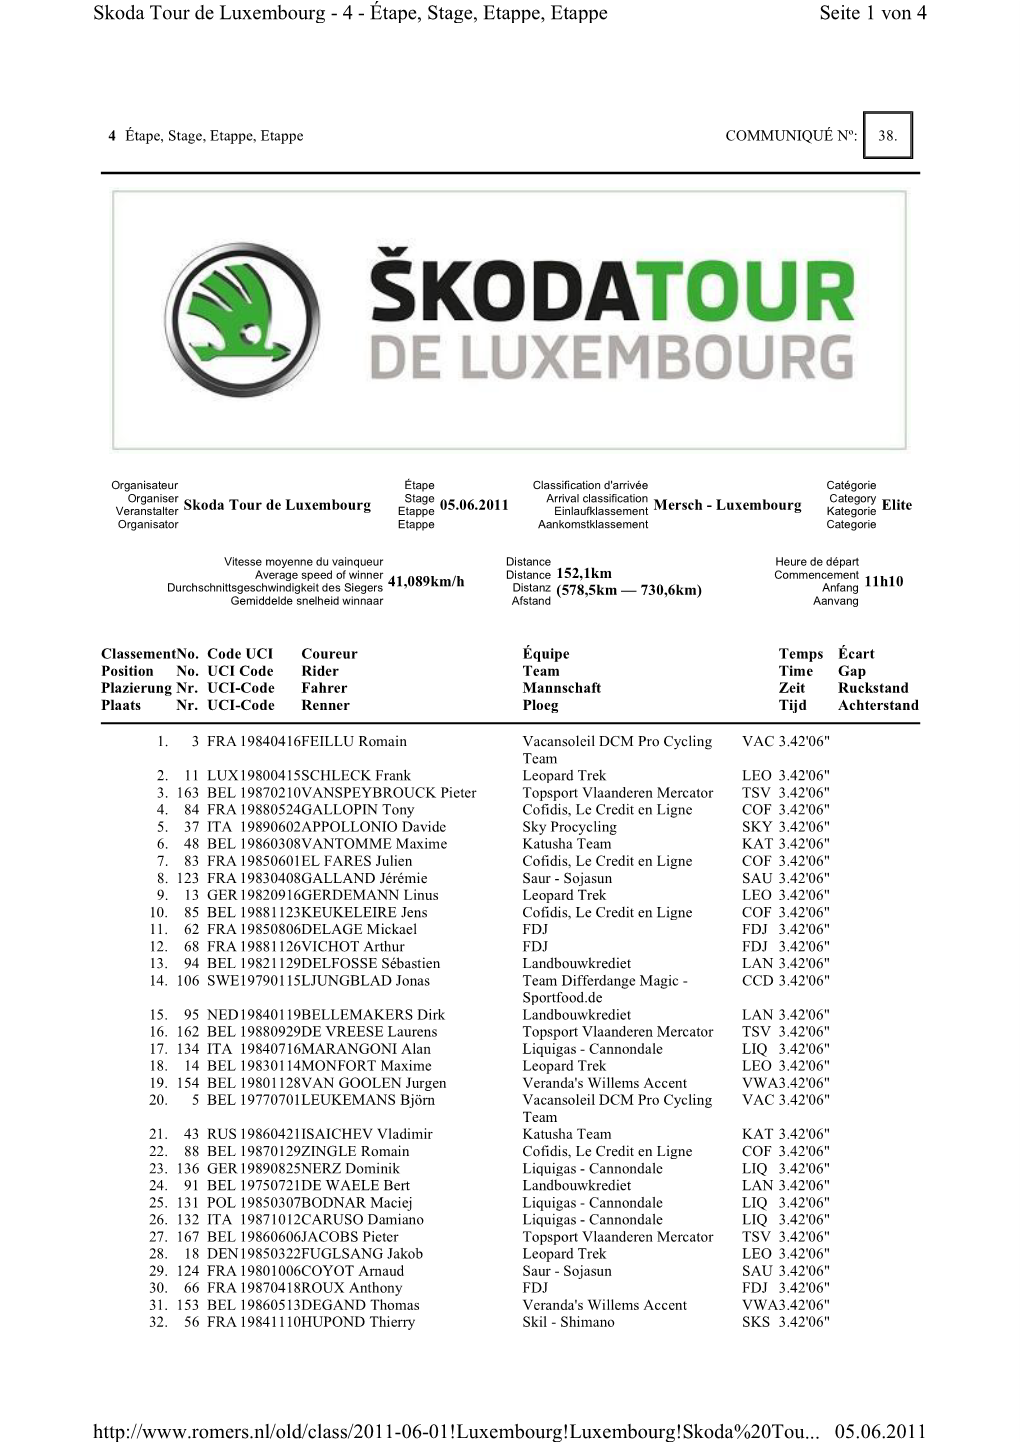 Seite 1 Von 4 Skoda Tour De Luxembourg